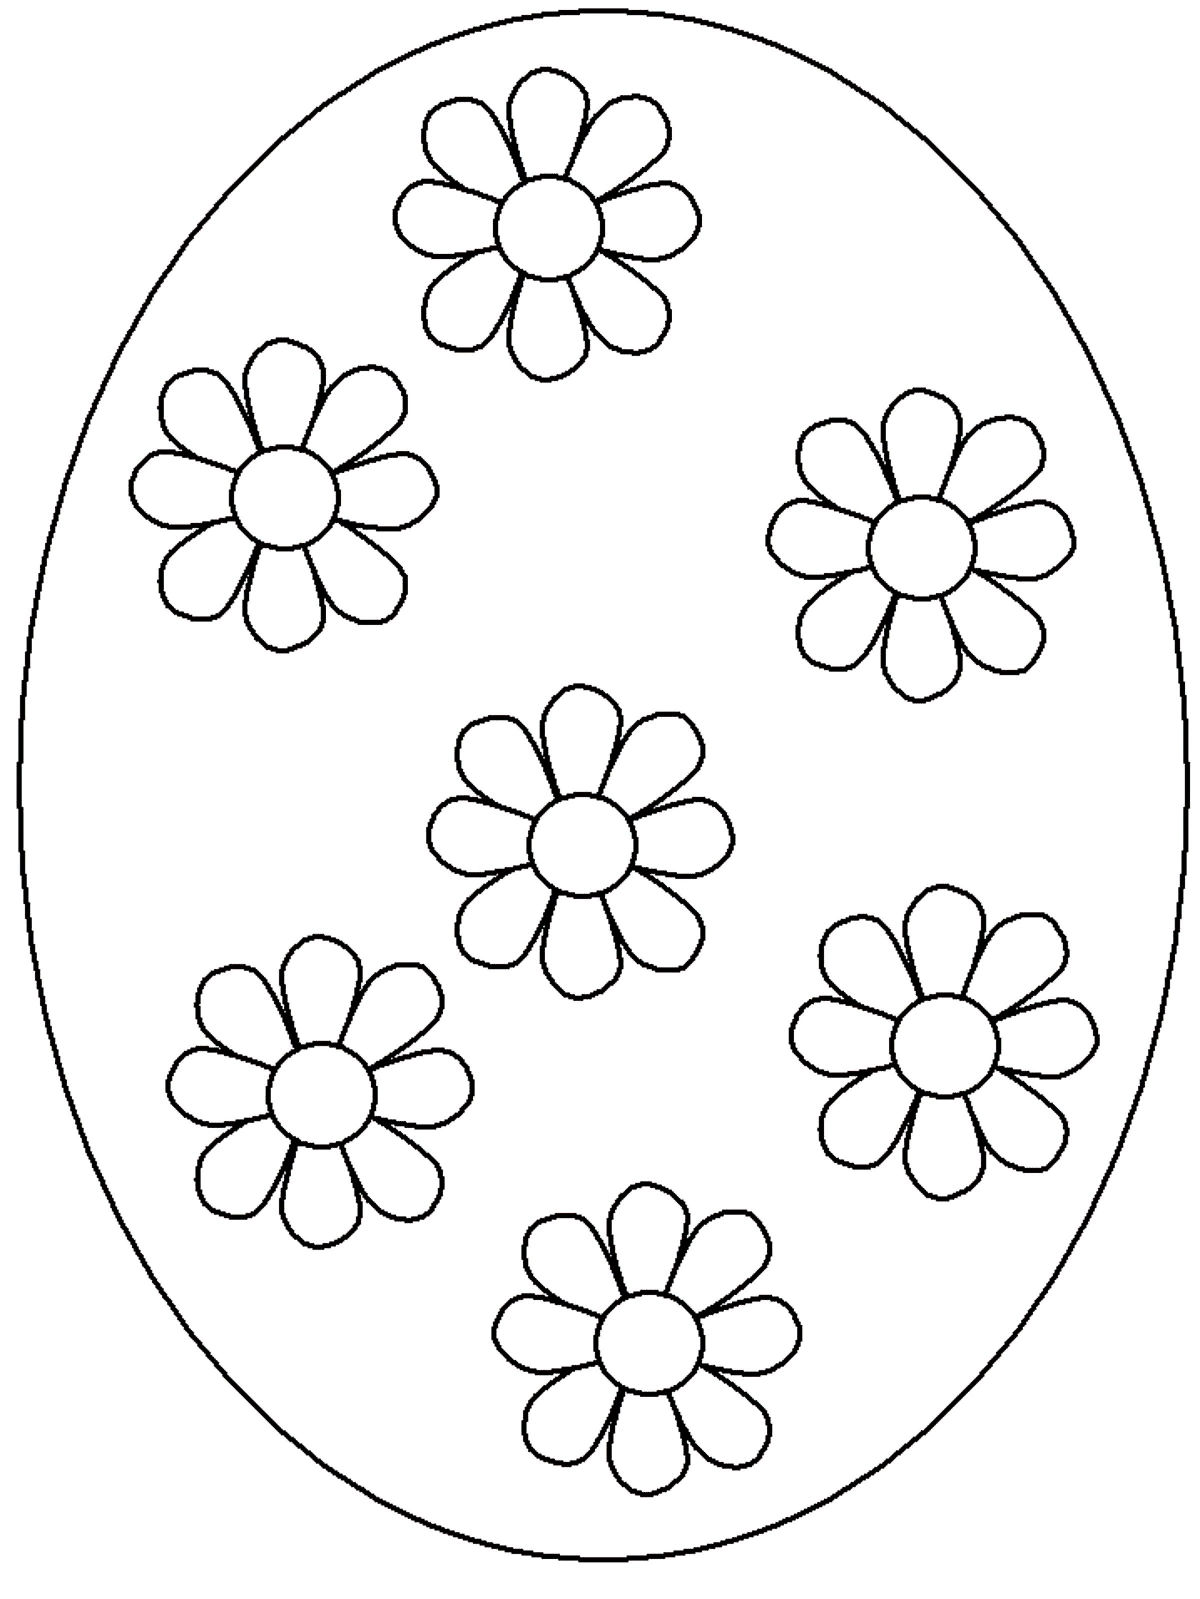 coloriage oeuf de paques simple gros format fleurs larges petales